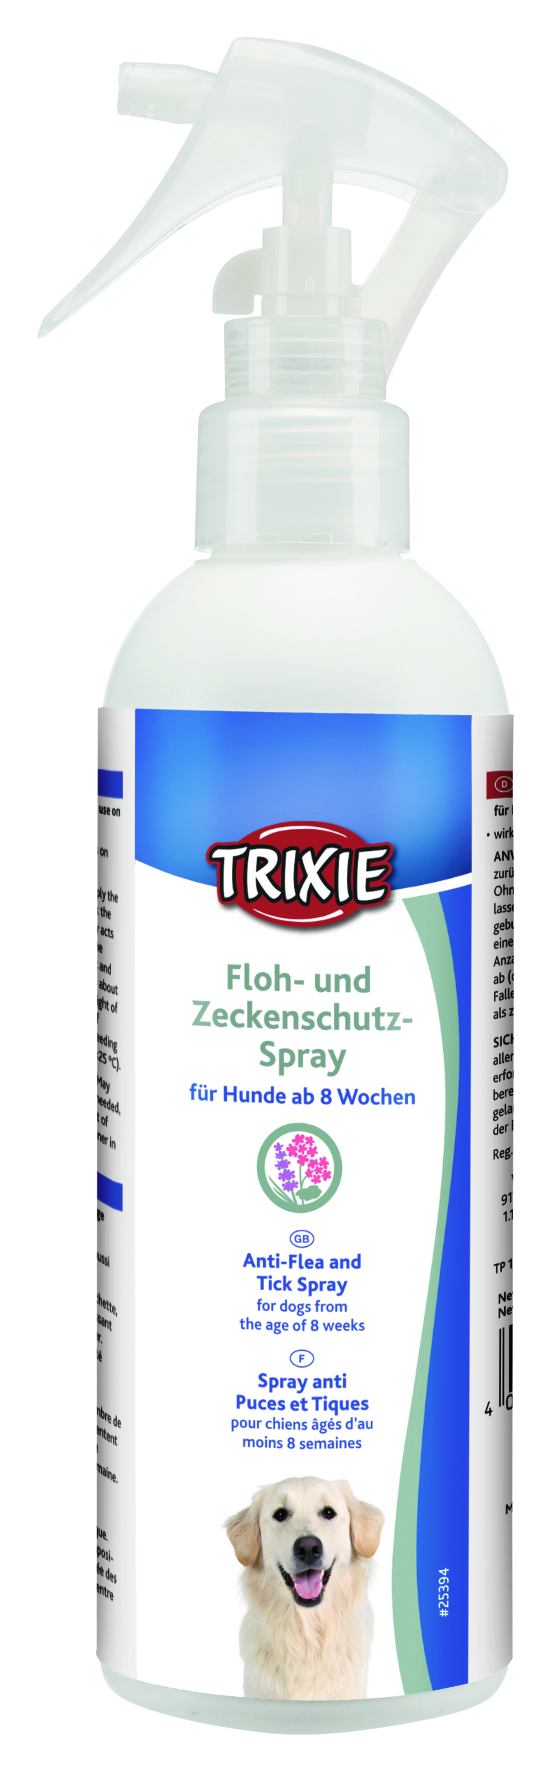 Floh- und Zeckenschutz-Spray, 250 ml